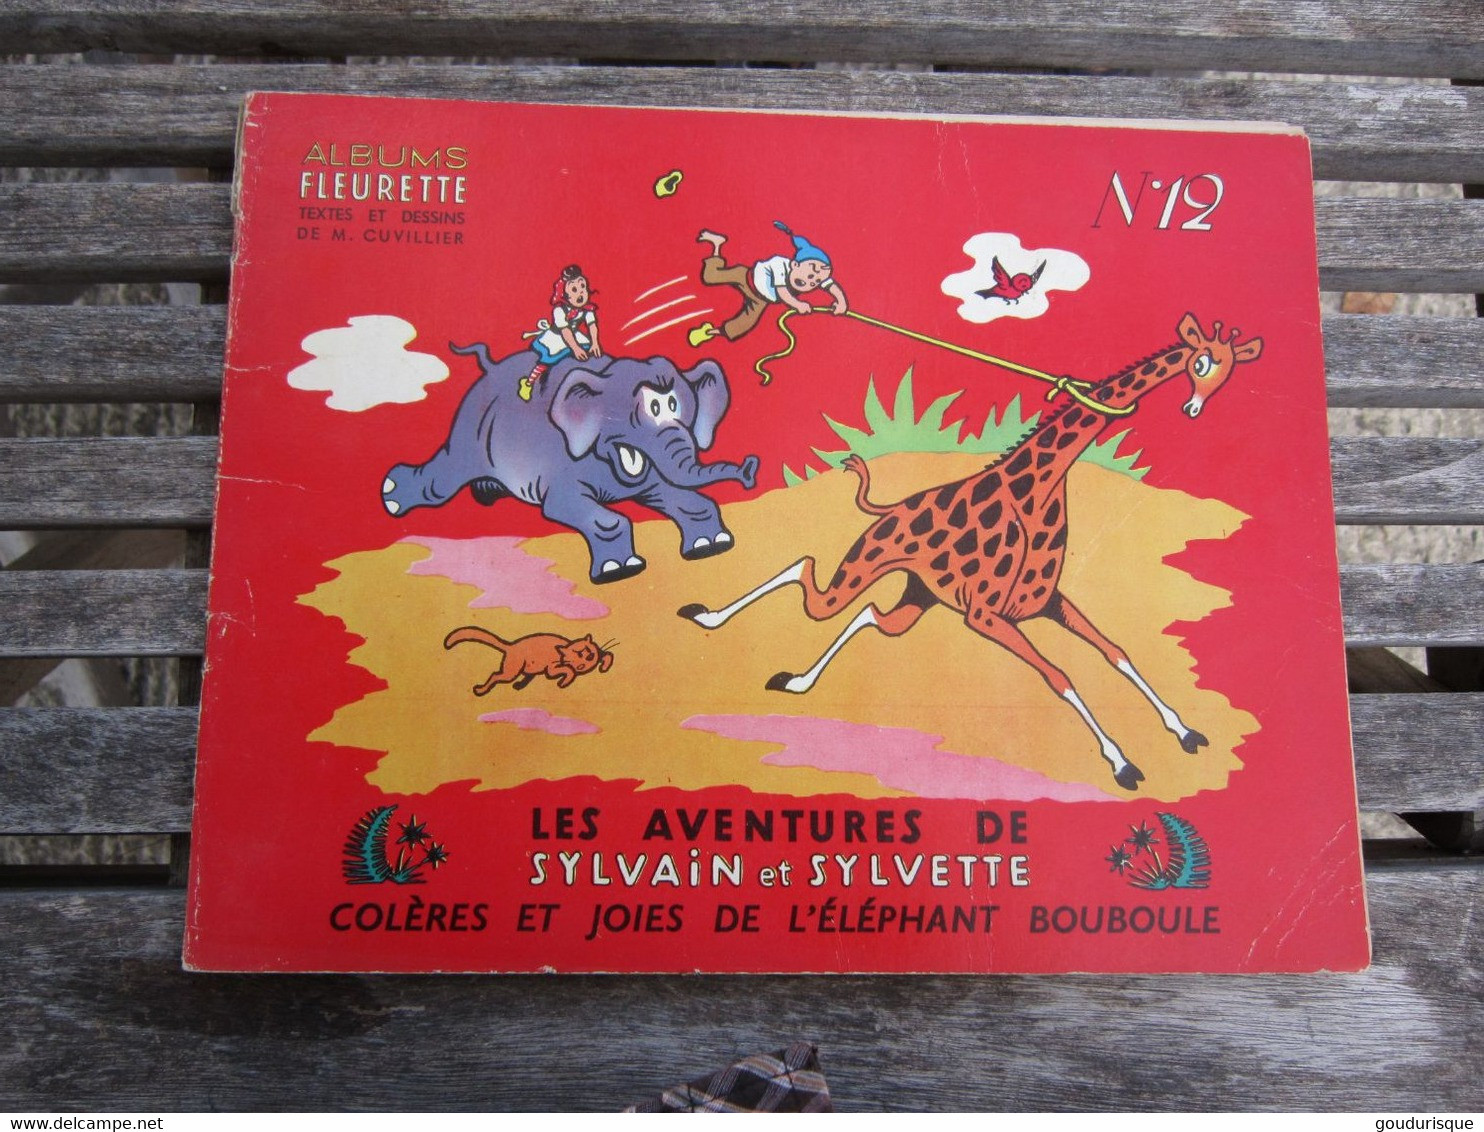 SYLVAIN ET SYLVETTE ALBUM FLEURETTE N°12 COLERES ET JOIES DE L'ELEPHANT BOUBOULE - Sylvain Et Sylvette